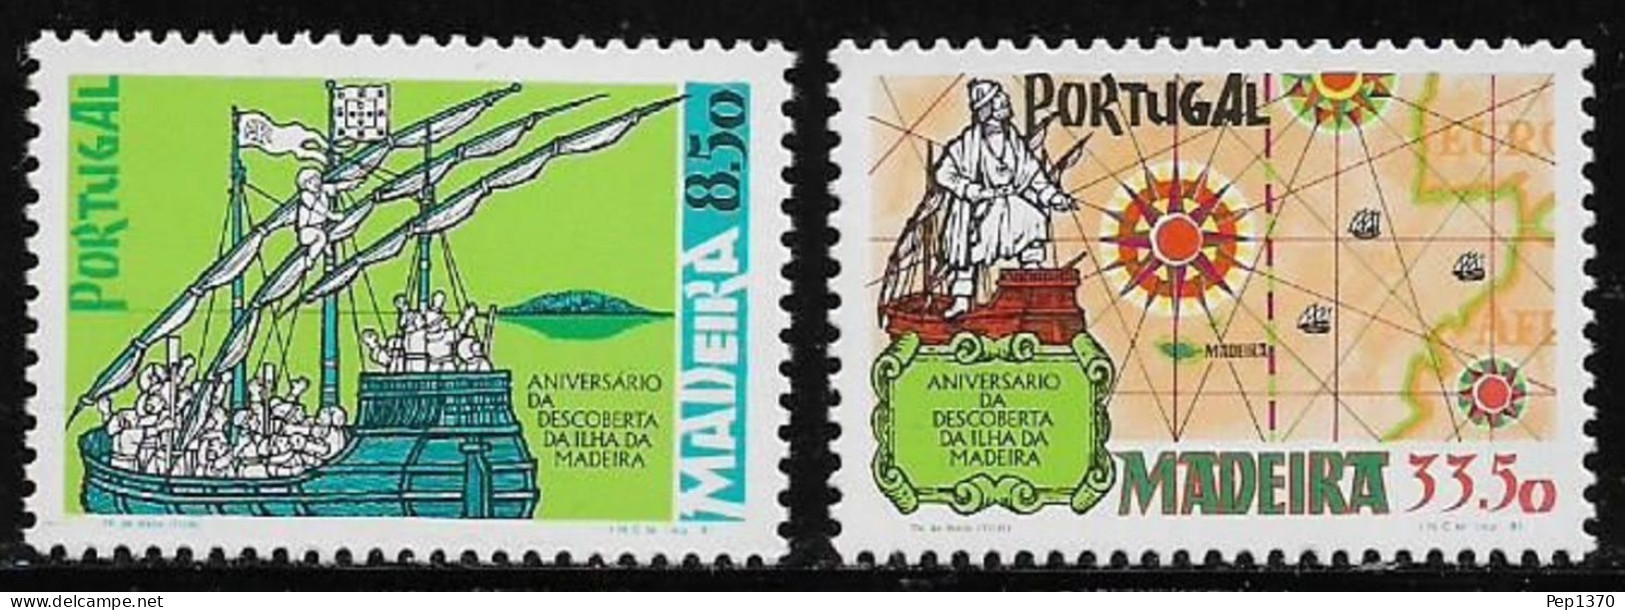 MADEIRA 1981 - ANIVERSARIO DEL DESCUBRIMIENTO DE LA ISLA DE MADEIRA - YVERT 76/77** - Barche